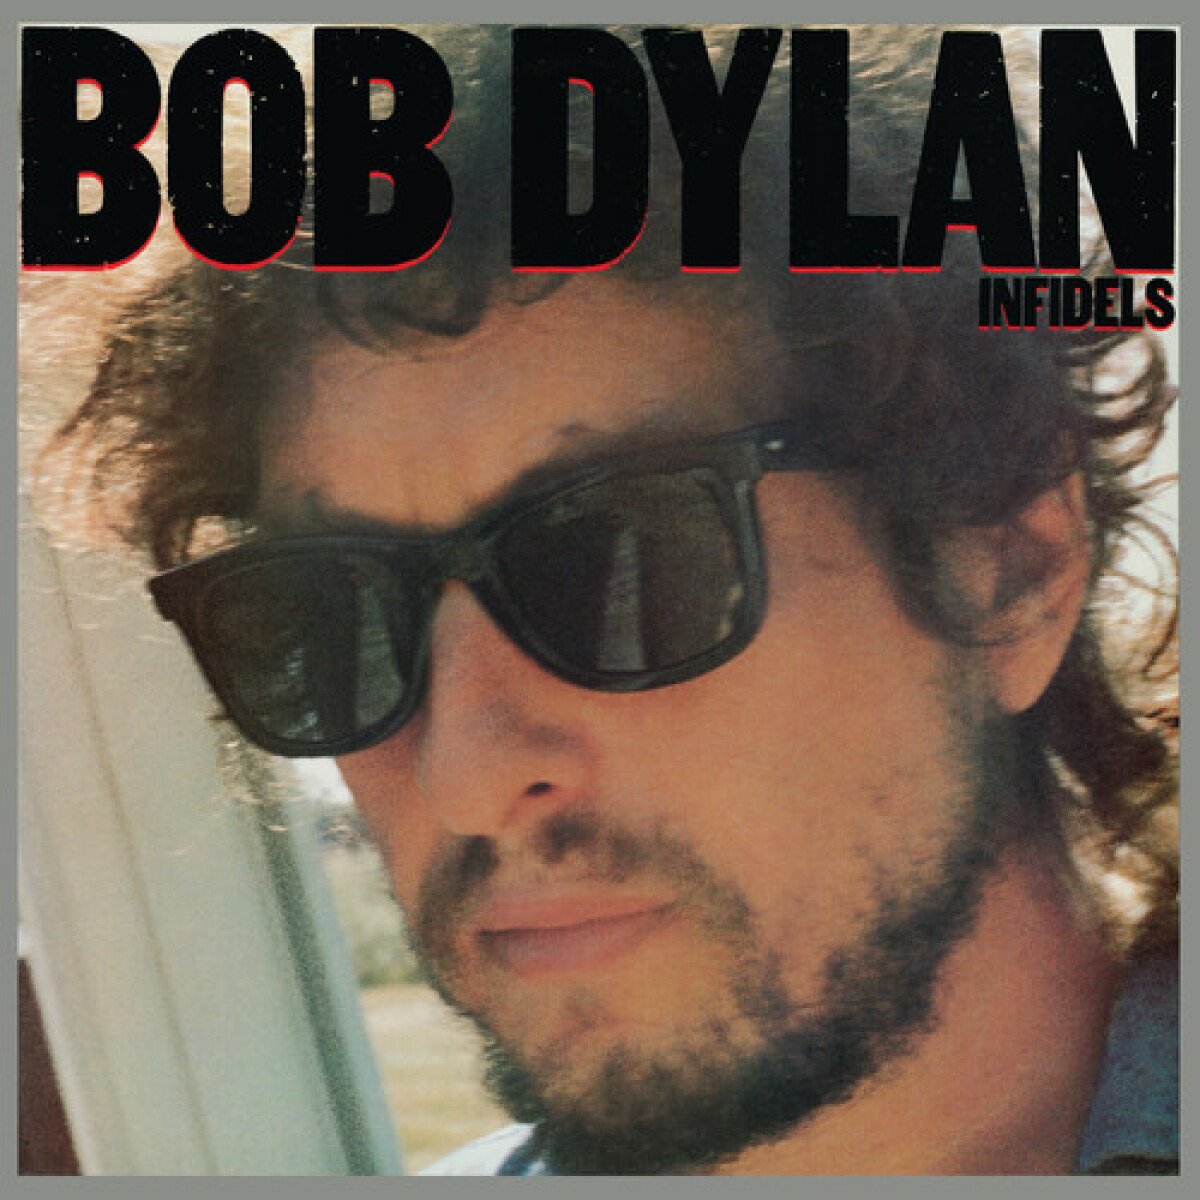 (l) Dylan Bob - Infidels - Vinilo 